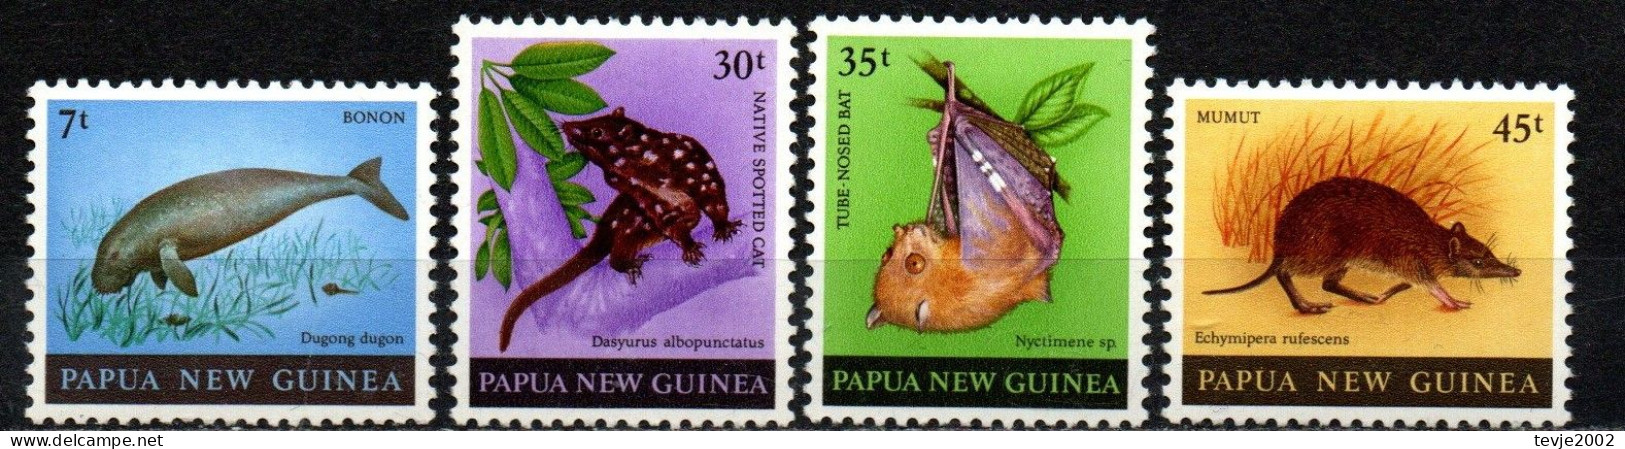 Papau Neuguinea 1980 - Mi.Nr. 398 - 401 - Postfrisch MNH - Tiere Animals - Papouasie-Nouvelle-Guinée